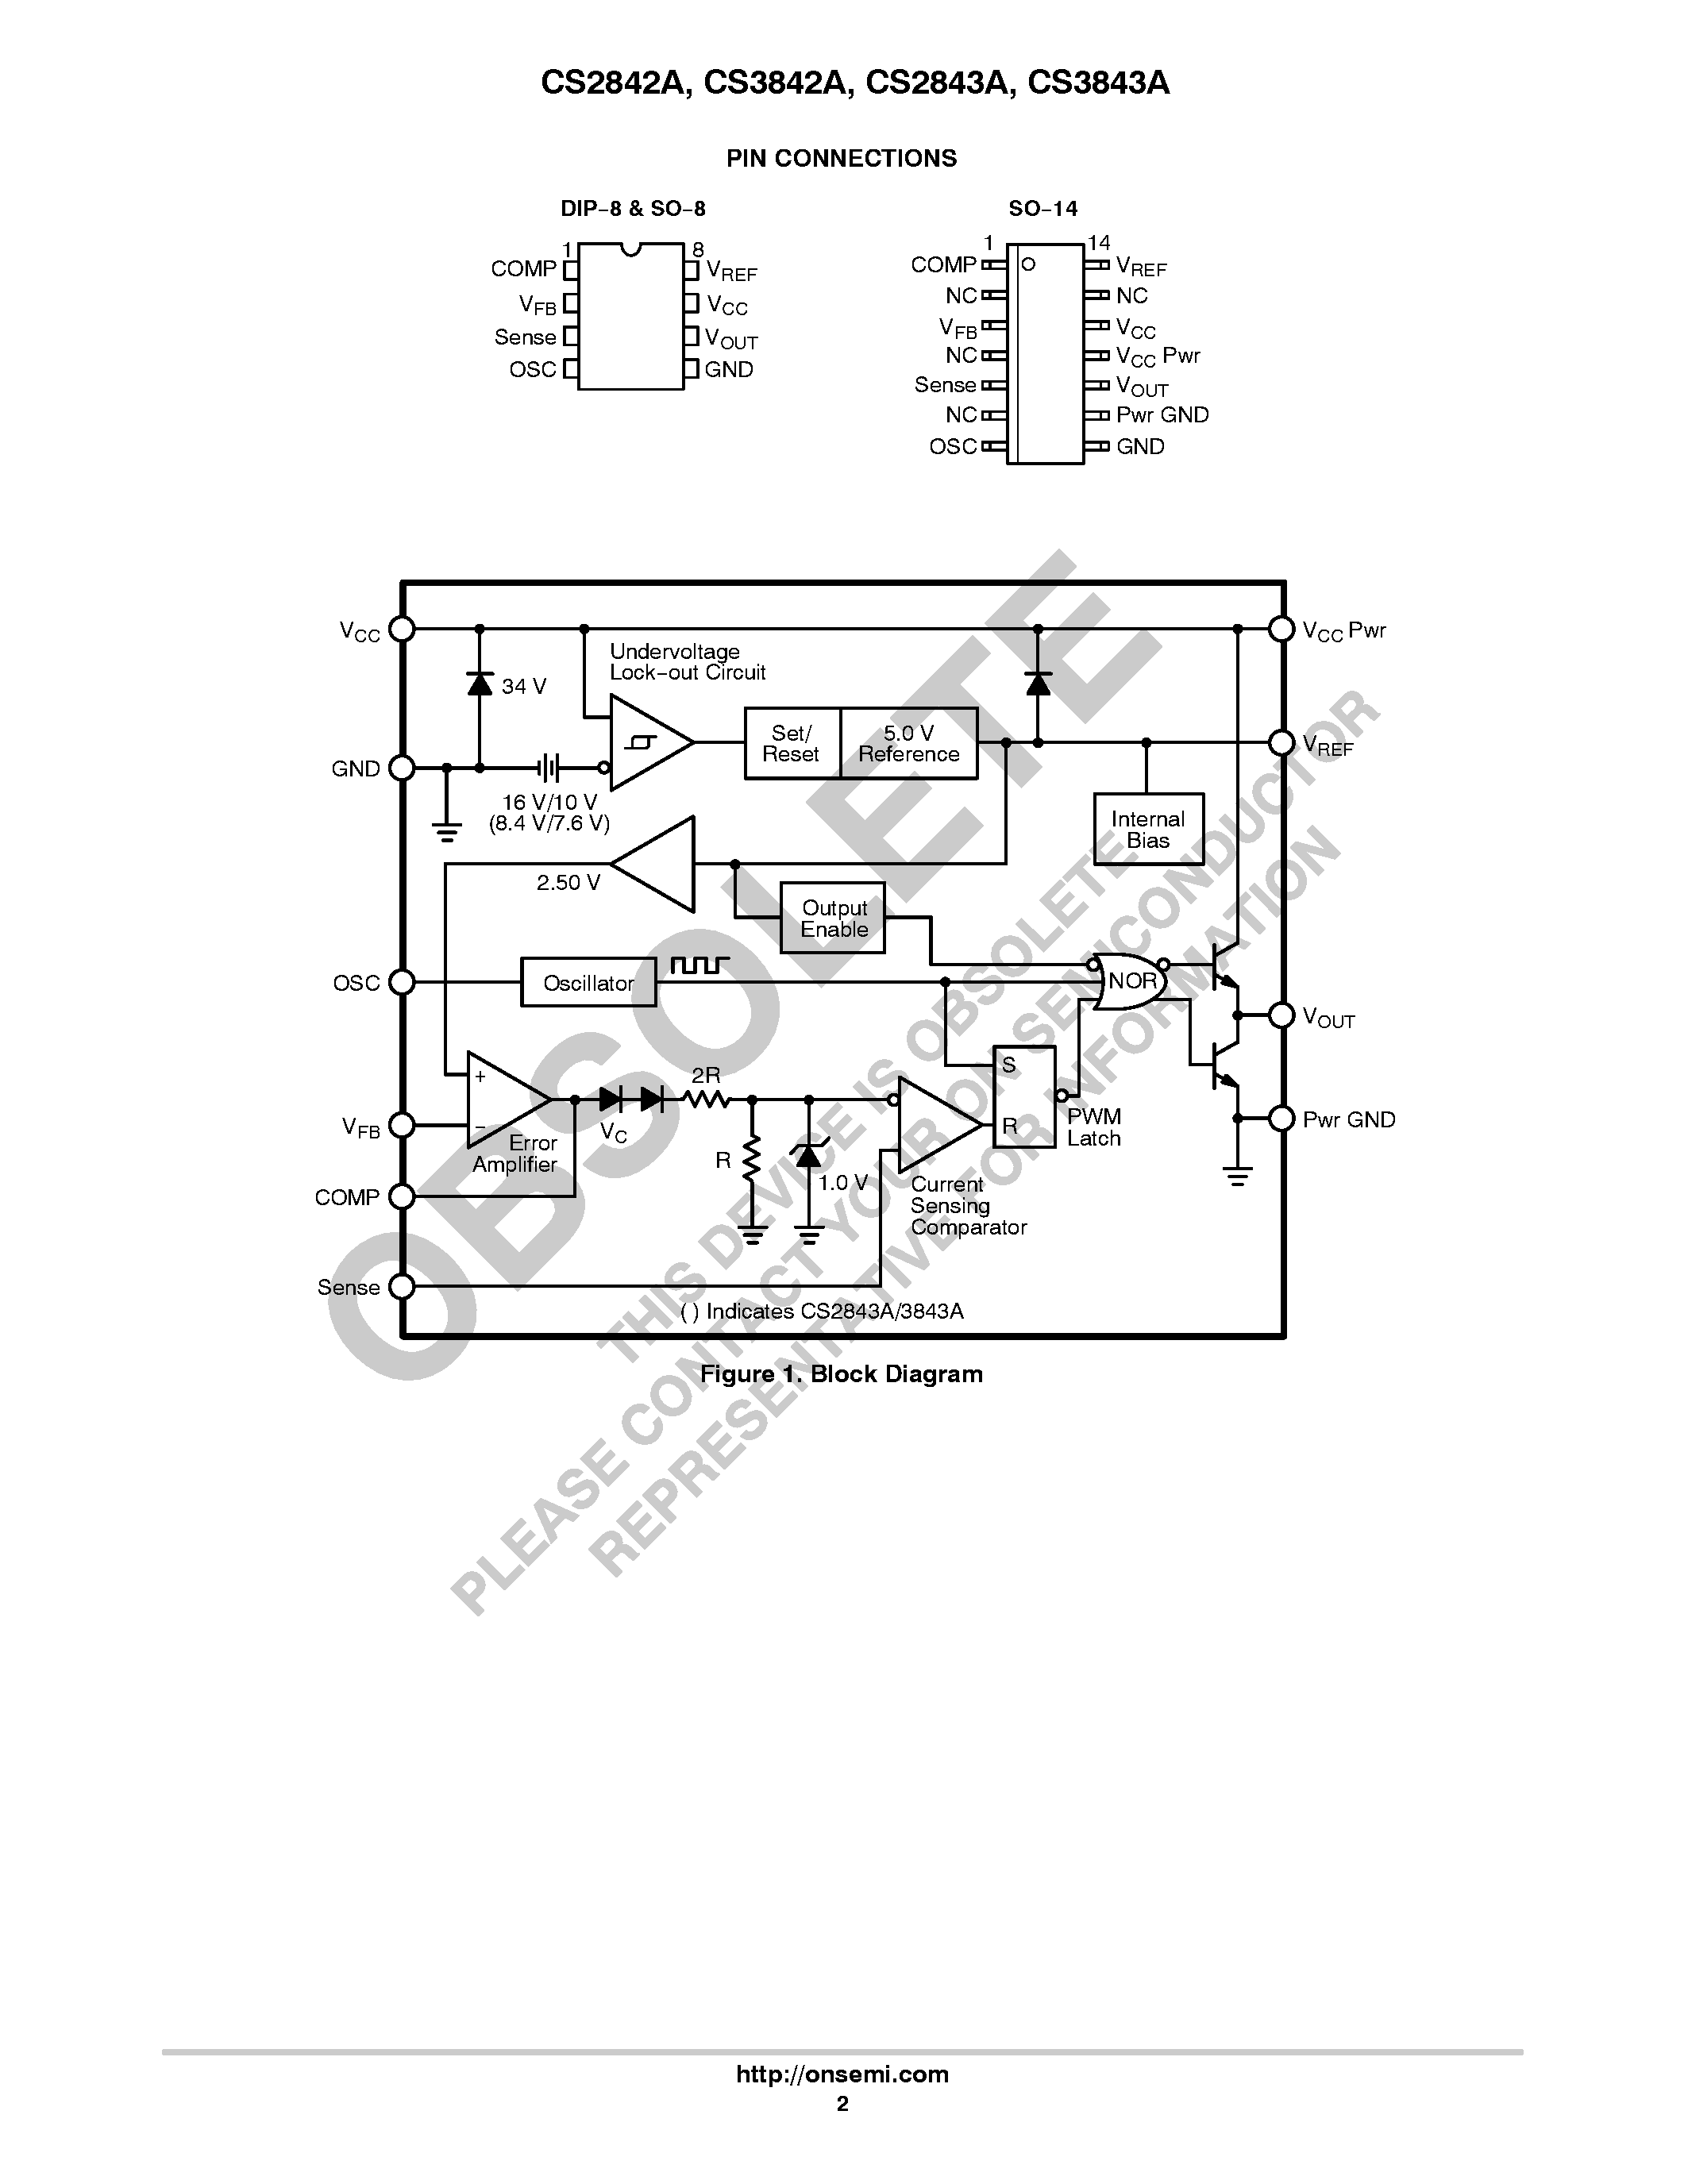 Даташит CS2842A - (CS2842A / CS2843A) Off-Line Current Mode PWM Control Circuit страница 2